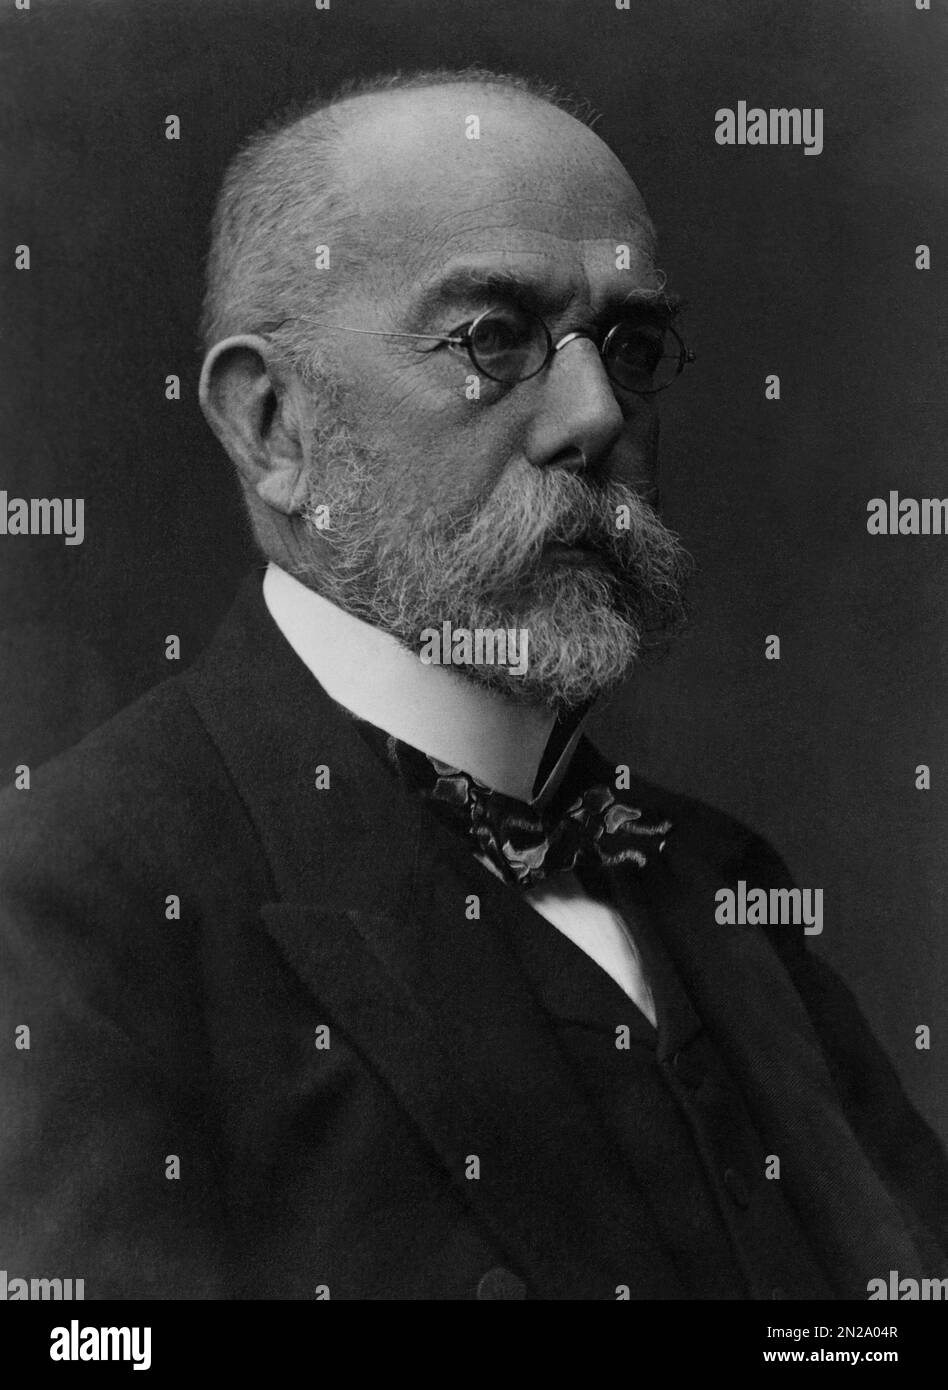 1908 Ca, DEUTSCHLAND : der deutsche Doktor ROBERT KOCH ( 1843 - 1910 ). Er wurde berühmt für die Entdeckung des Anthrax-Bazillus ( 1877 ), des Tuberkulose-Bazillus ( 1882 ) und der Cholera vibrio ( 1883 ) sowie für seine Entwicklung von Kochs Postulaten. 1905 erhielt er den NOBELPREIS für Physiologie oder Medizin für seine Tuberkulosebefunde . Er gilt als einer der Gründer der Bakteriologie Unbekannter Fotograf . - BATTERIOLOGO - TBC - BATTERIOLOGIA - TUBERCOLOSI - ANTRACE - PREMIO NOBEL PER LA MEDICINA - VIROLOGIA - VIRUS - VIROLOGO - MEDICIN - SCIENZA - SCIENZIATO - BIOLOGIA - BIOLOGY Stockfoto